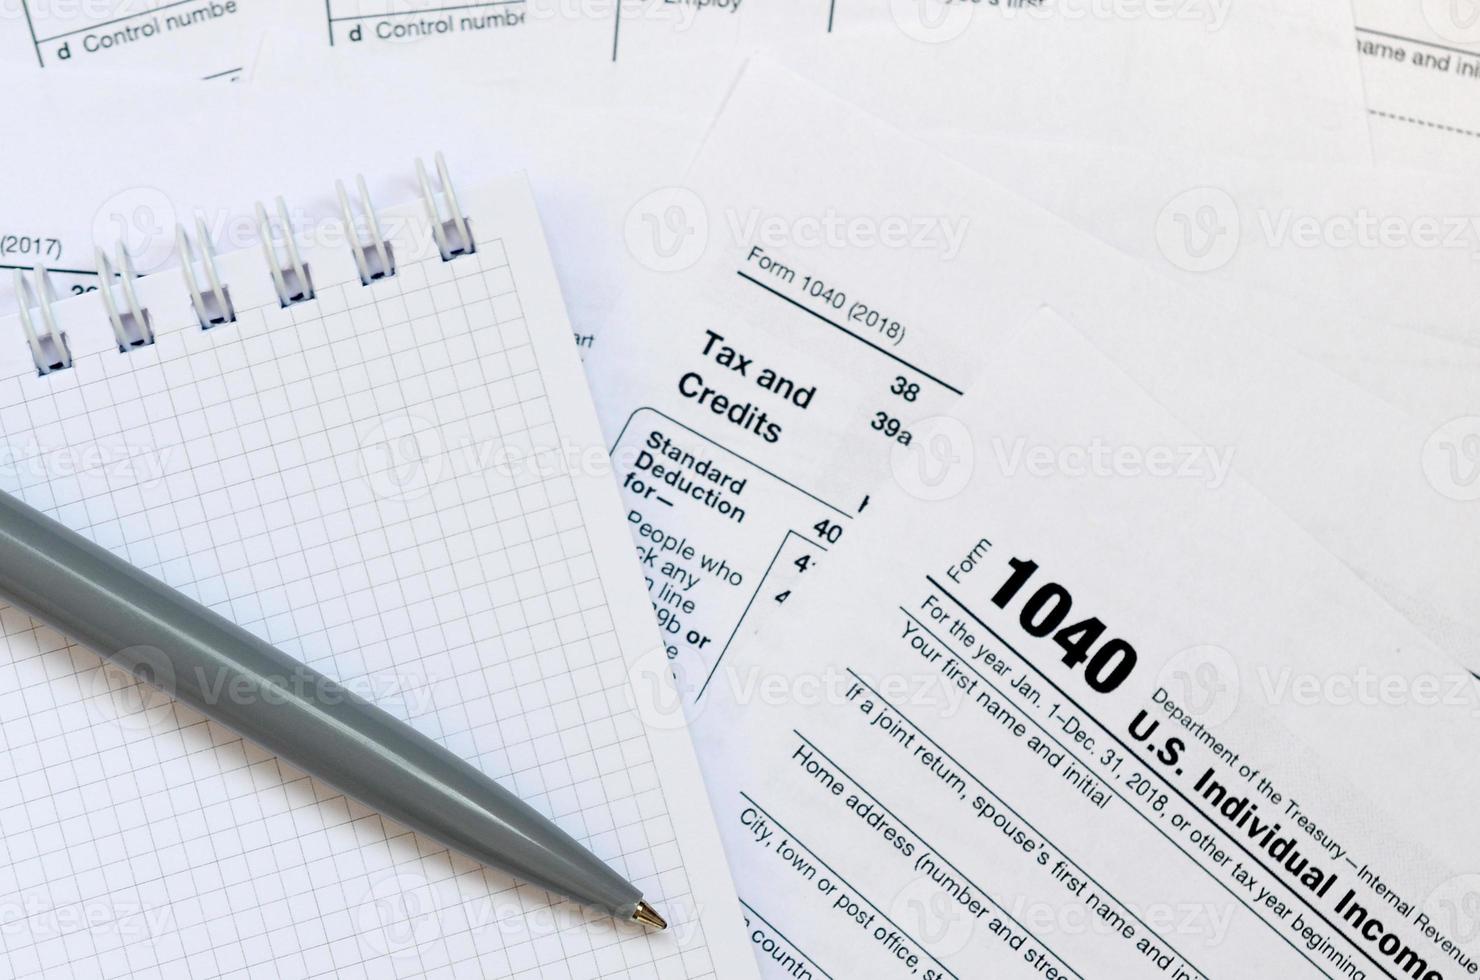 il penna e taccuino è bugie su il imposta modulo 1040 noi individuale reddito imposta Restituzione. il tempo per pagare le tasse foto